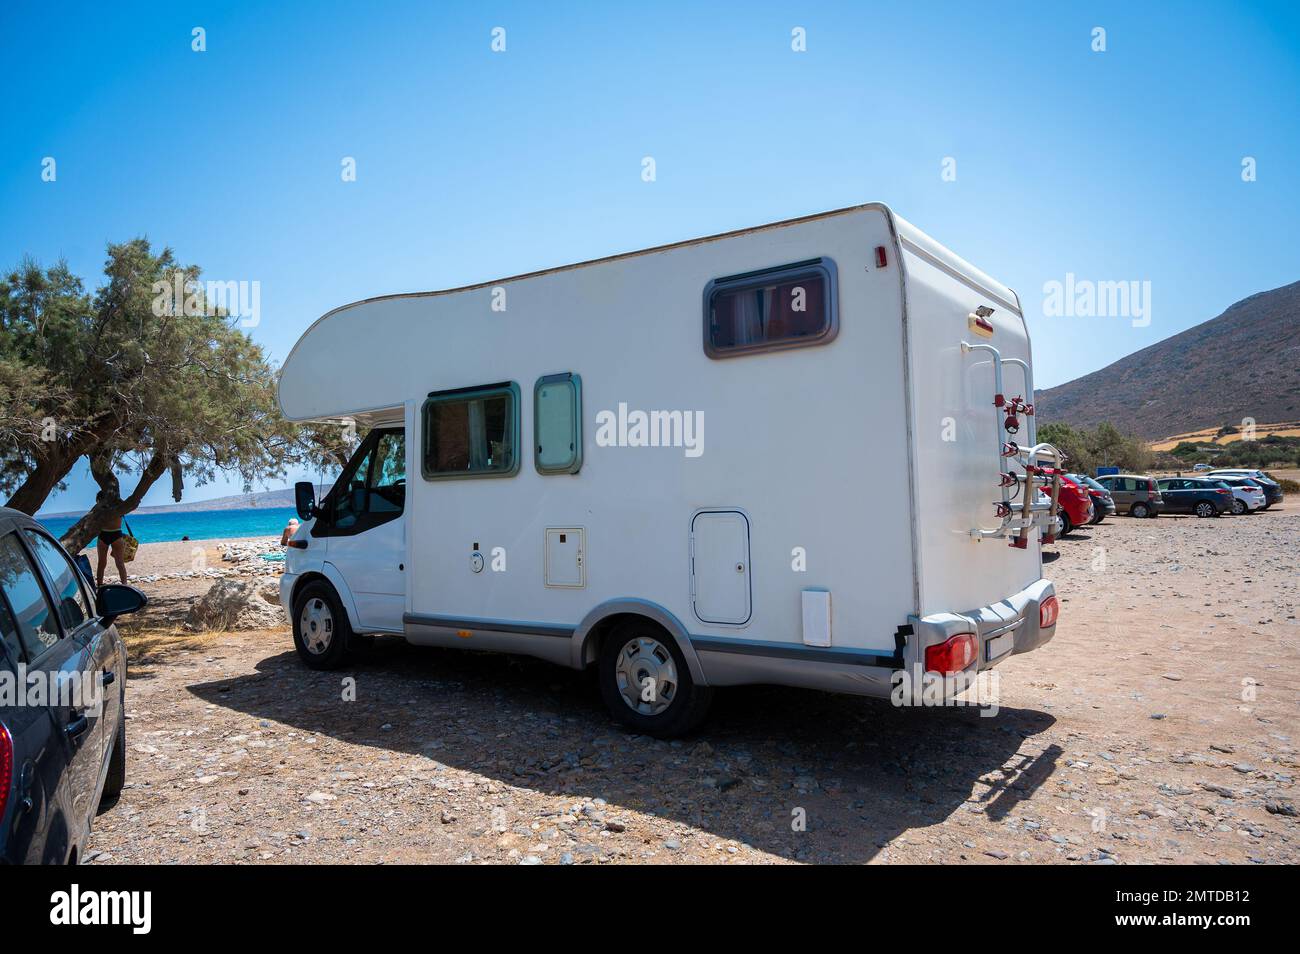 Das Wohnmobil befindet sich auf einem öffentlichen Parkplatz auf der Straße in Kreta, Griechenland. Wohnmobil oder Wohnmobil auf dem Parkplatz an einem öffentlichen Strand, Kreta, Stockfoto